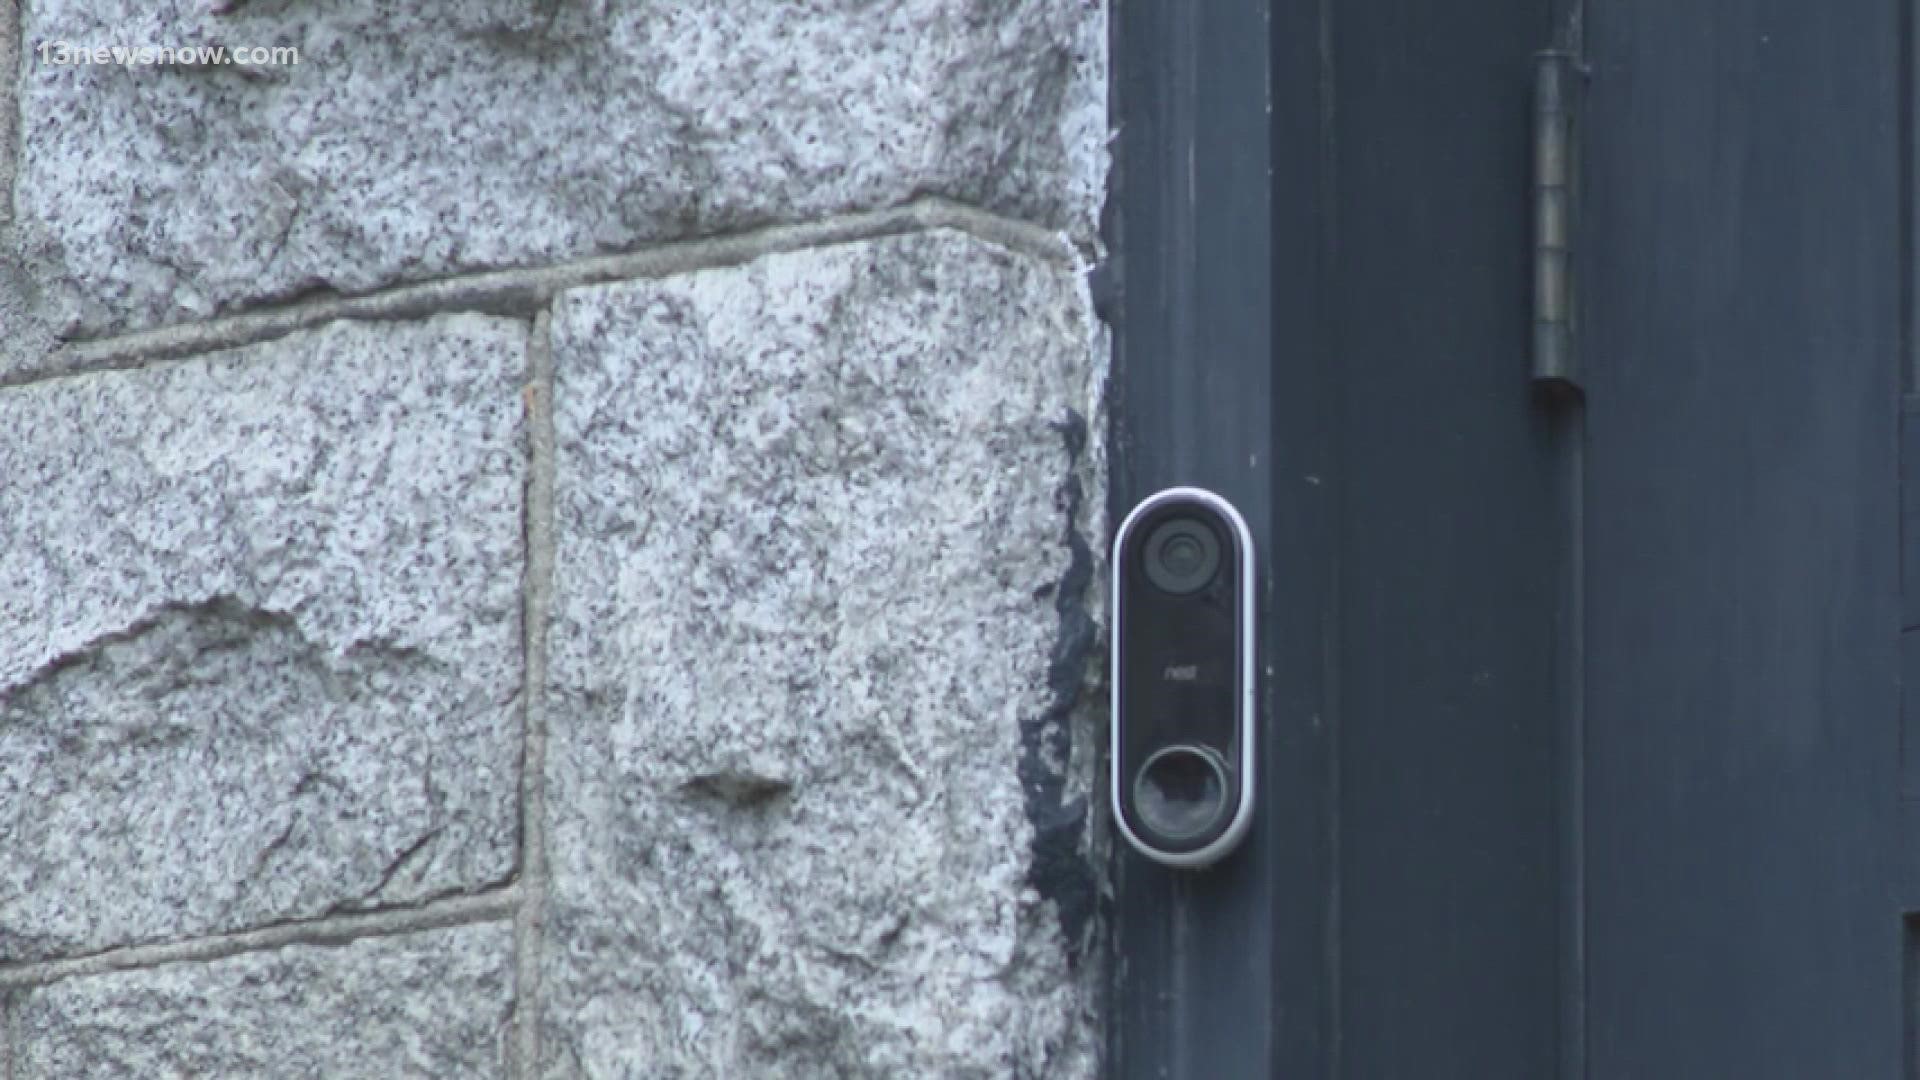 Do Video Doorbells Really Help to Deter Crime?